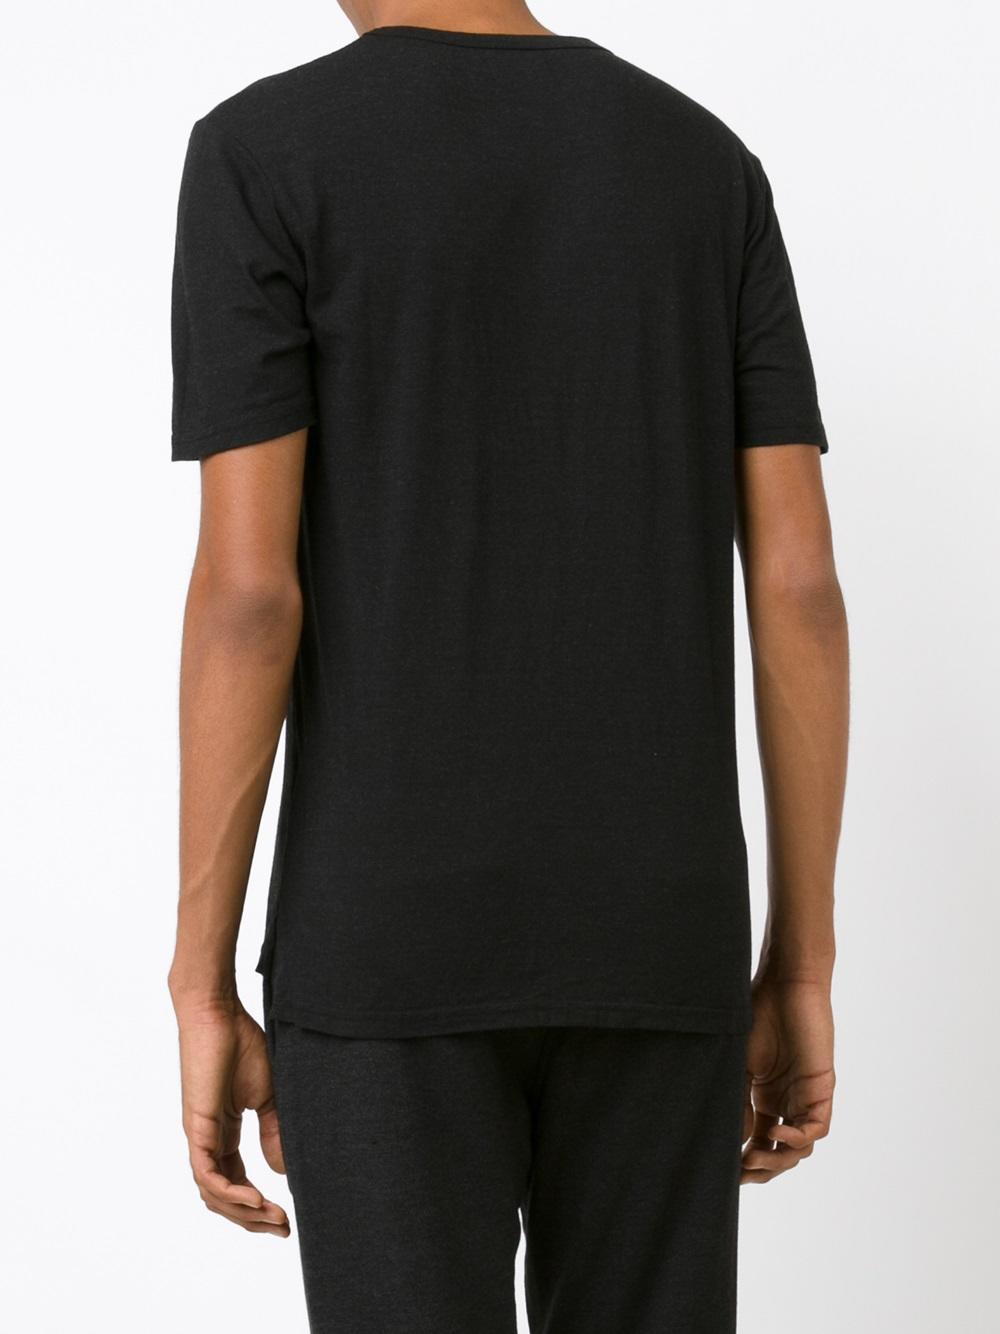 Goodlife Cotton Split Hem T-shirt in Black for Men - Lyst